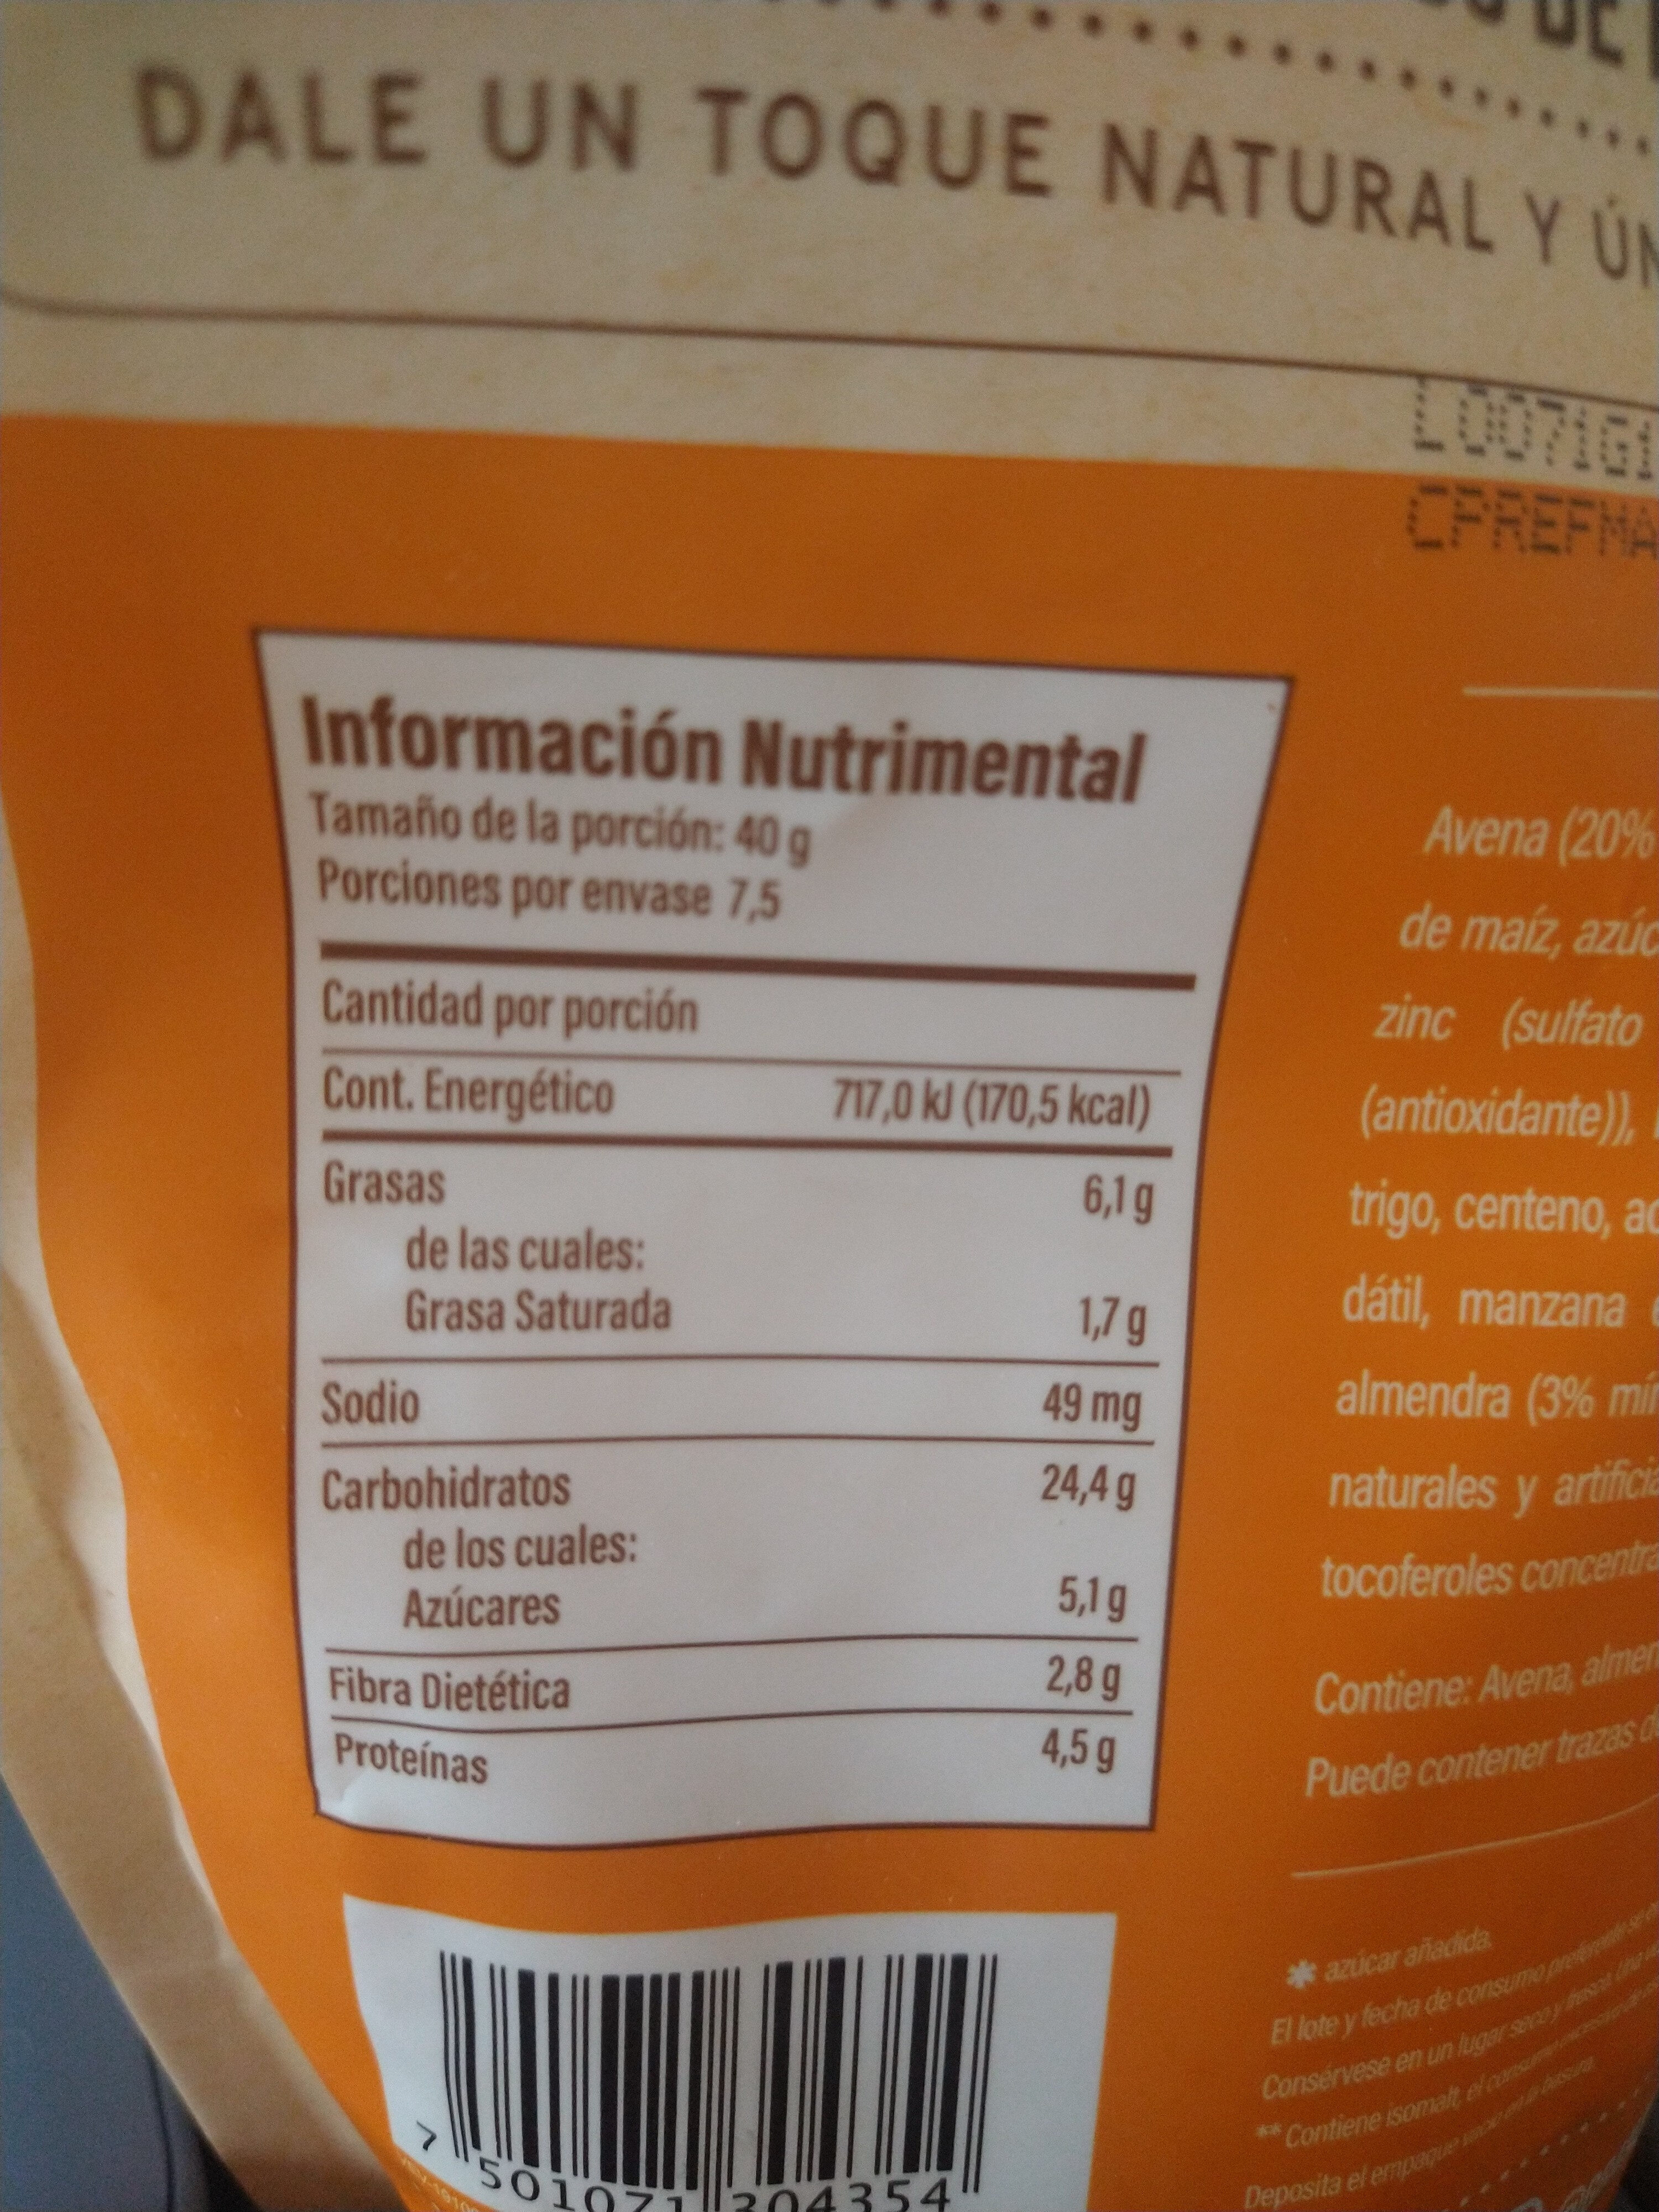 granola almendra y coco tostado - Información nutricional